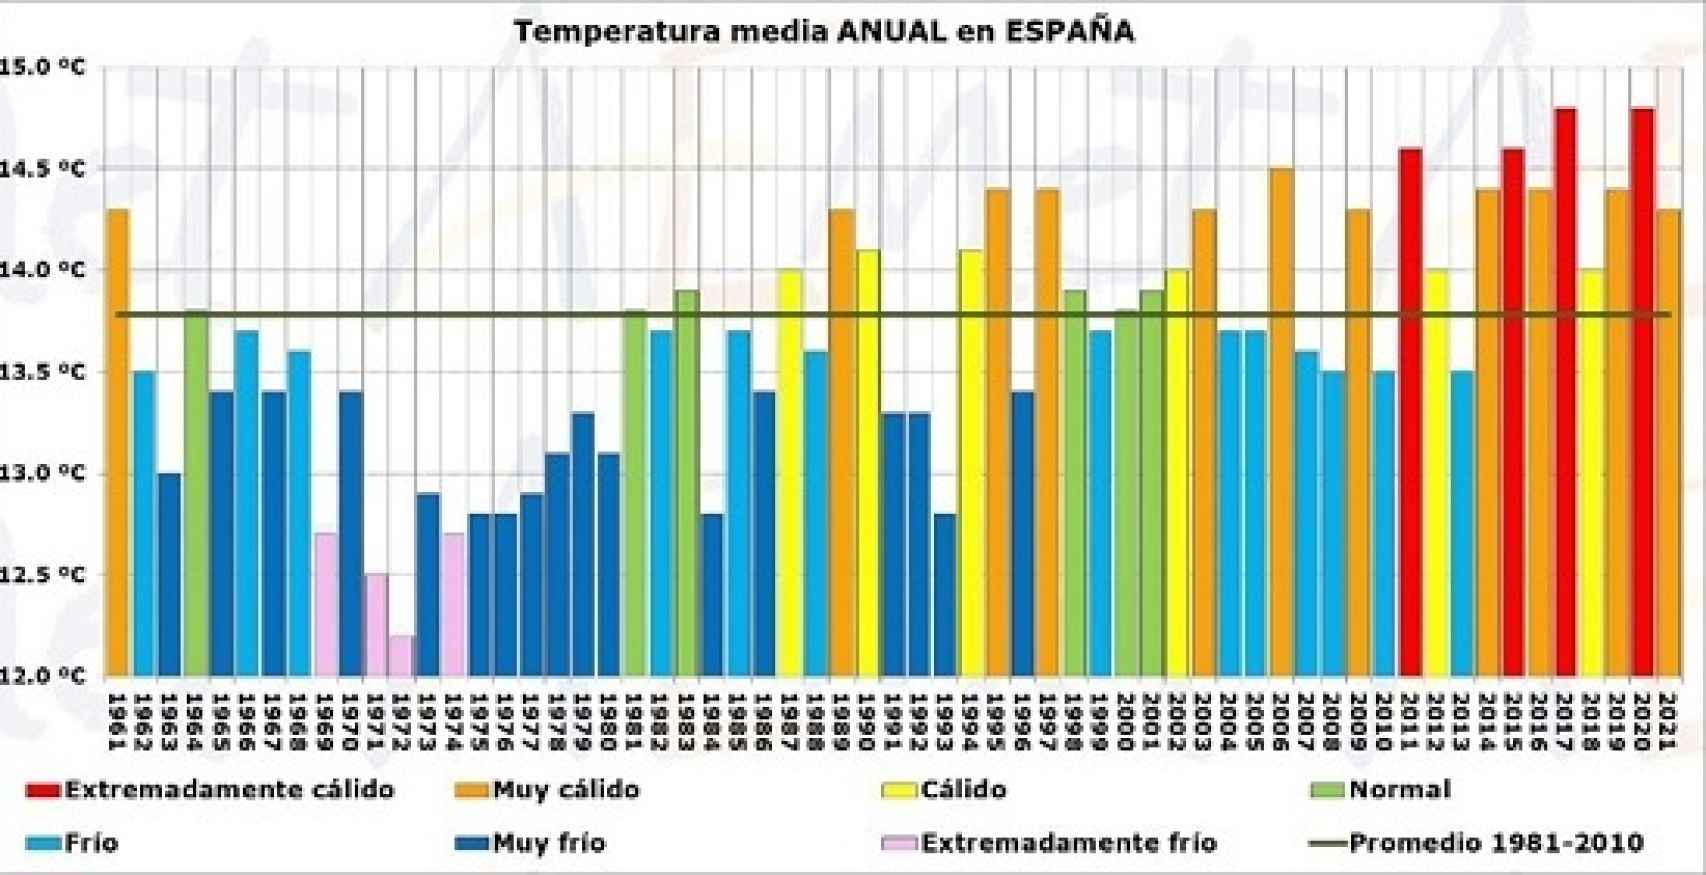 Serie de temperaturas medias anuales y carácter térmico en España desde 1961.